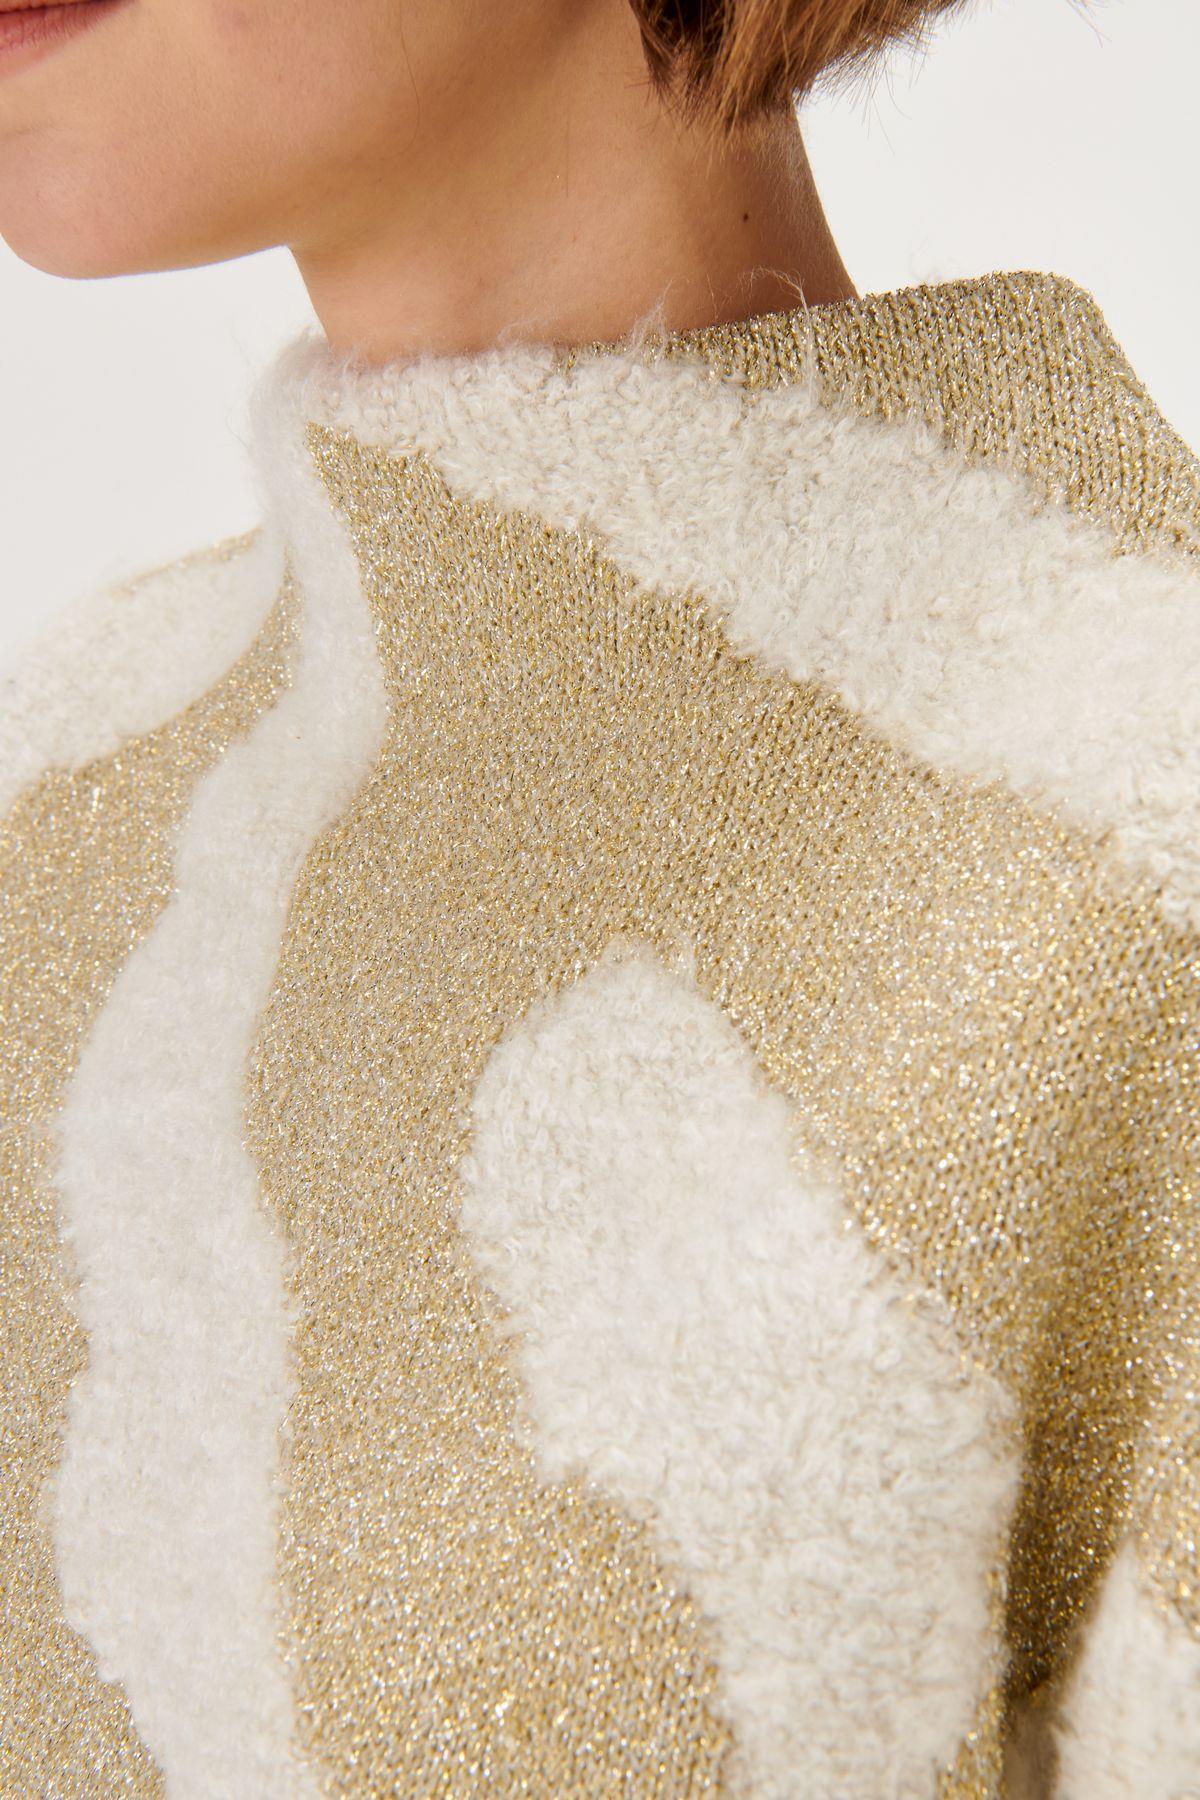 Beige Knitwear Sweater with Gold Pattern